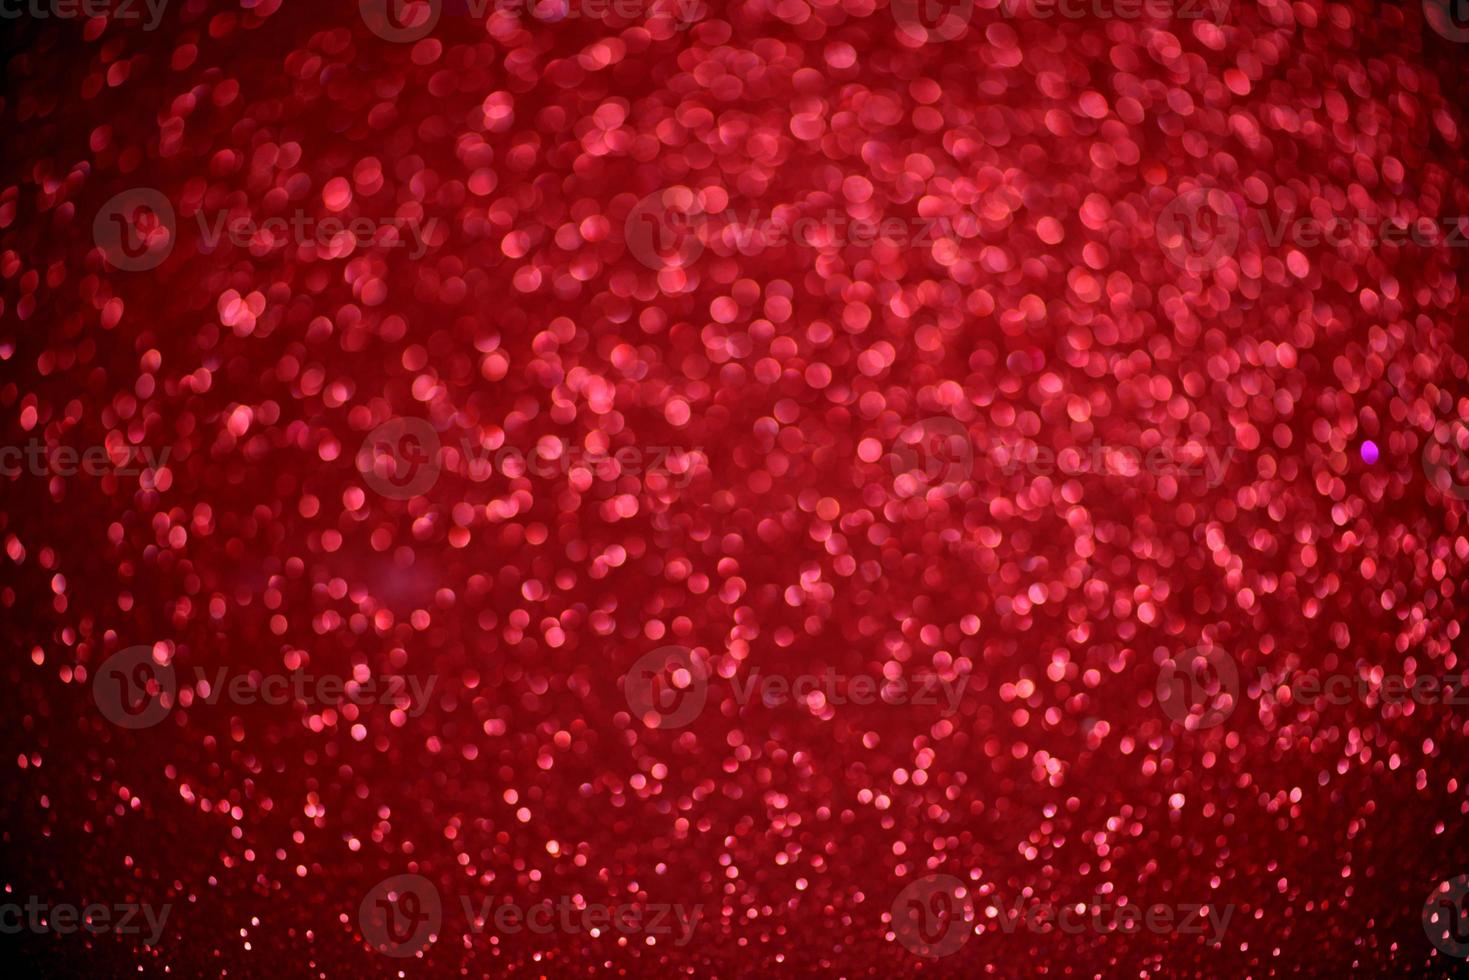 rött glitter bokeh ljus suddig abstrakt bakgrund för alla hjärtans dag, födelsedag, årsdag, bröllop, nyår och jul foto